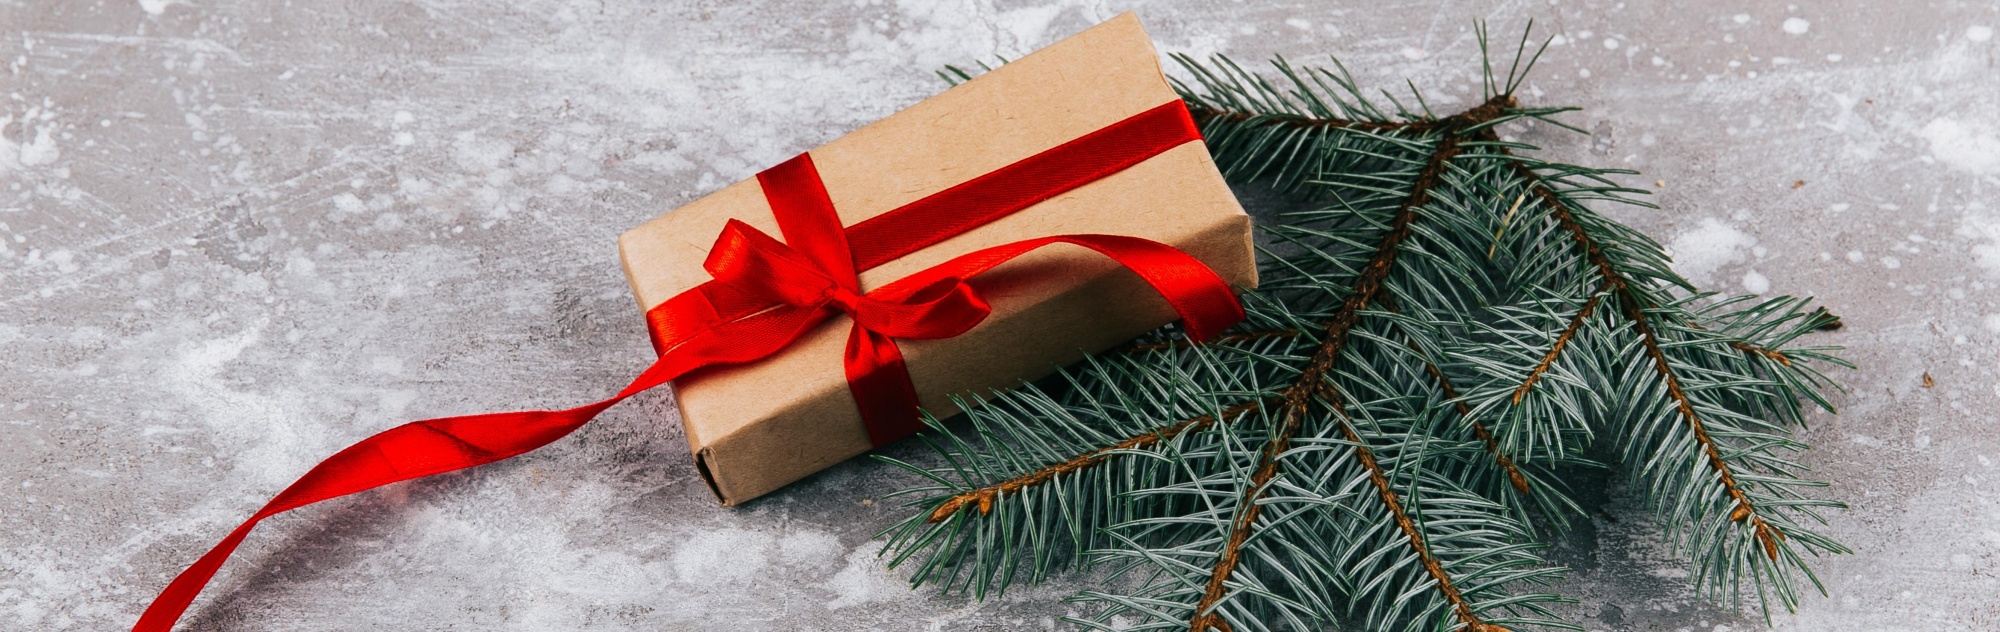 Подарки на рождество - купить оригинальные подарки в интернет-магазине MagicMag